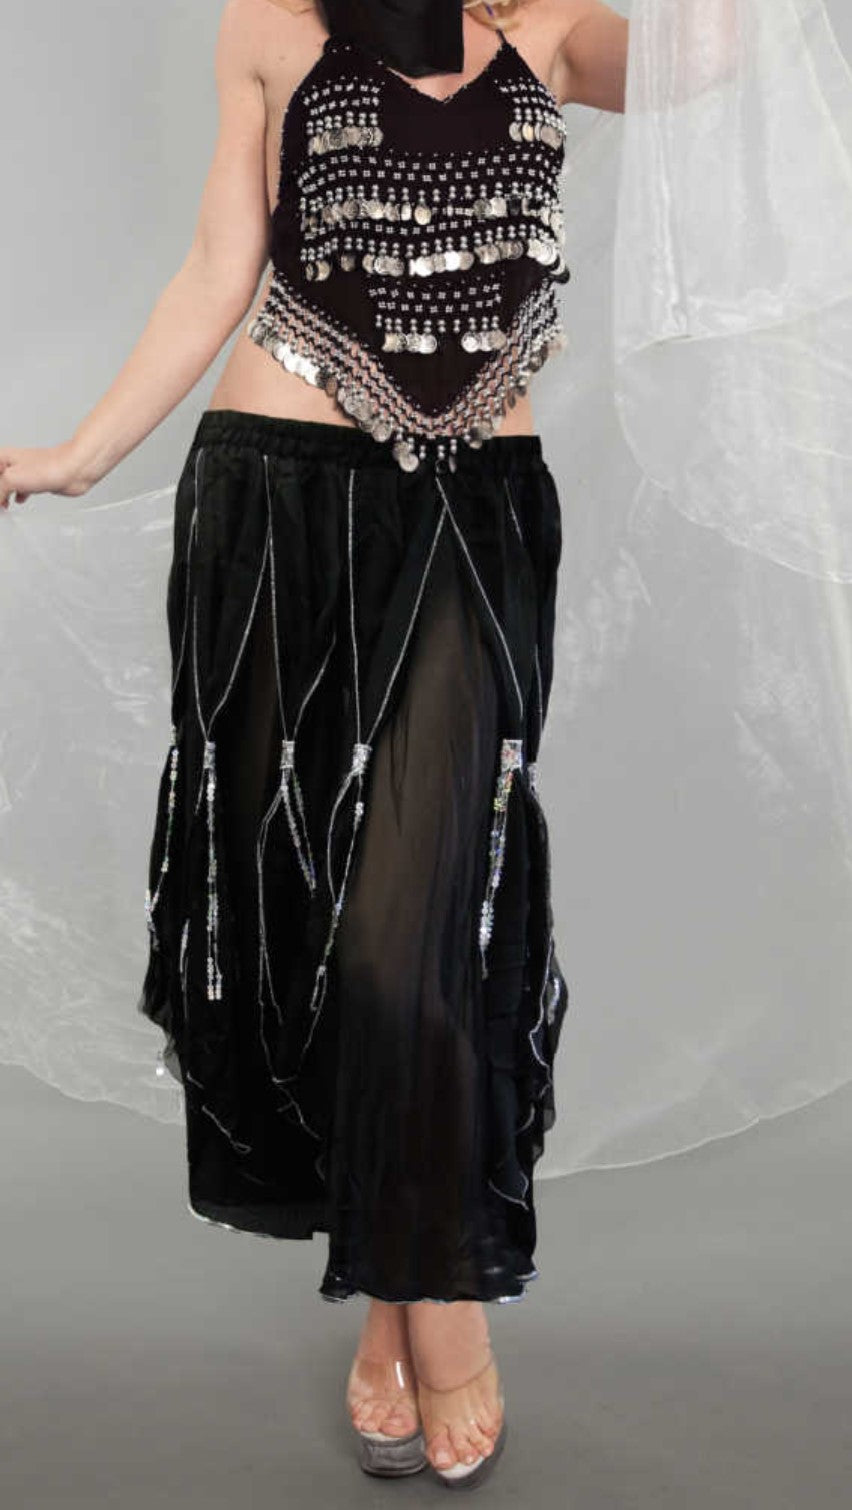 Skirt Tassel with Sequin